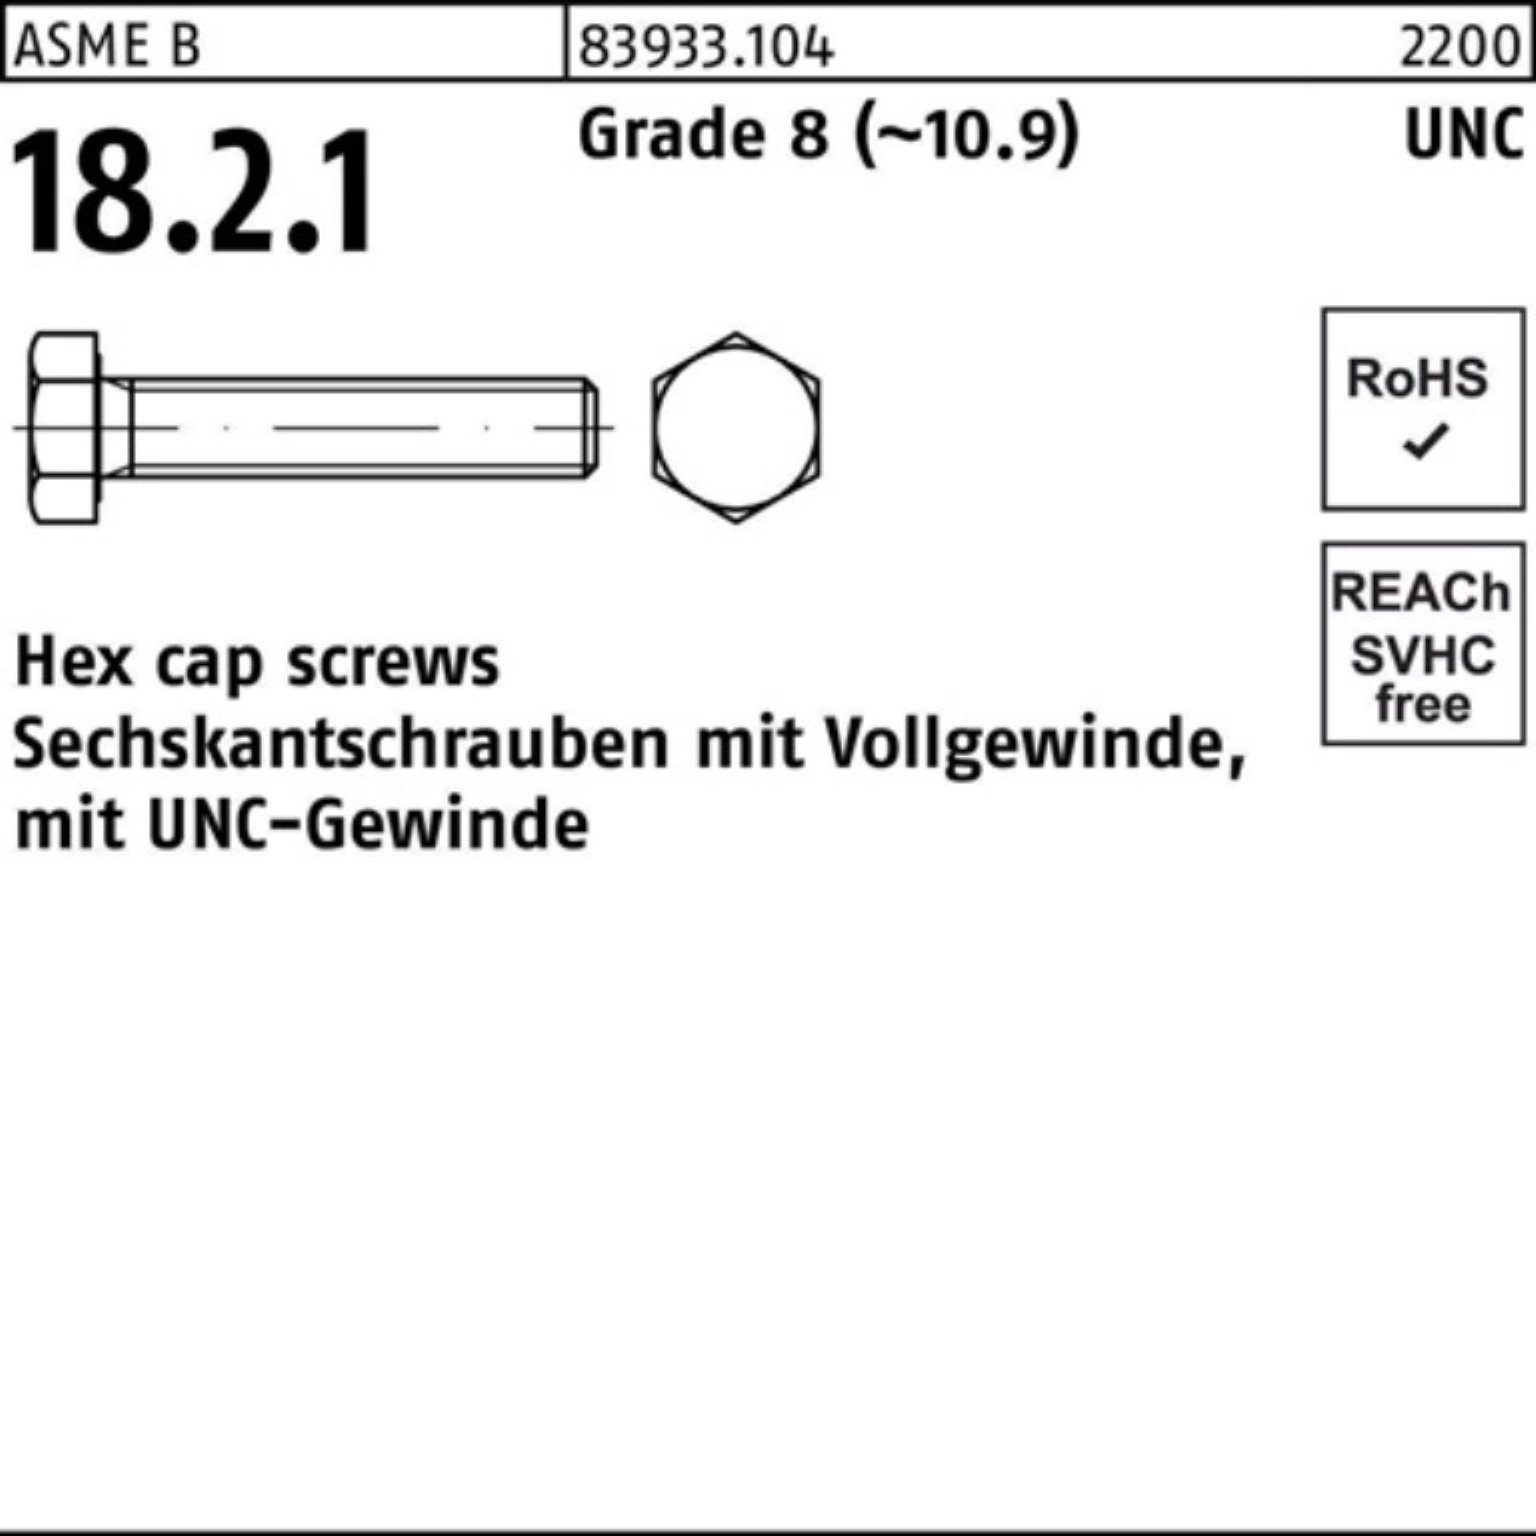 Reyher Sechskantschraube 100er Pack Sechskantschraube R 83933 UNC-Gewinde VG 7/8x 2 Grade 8 (1